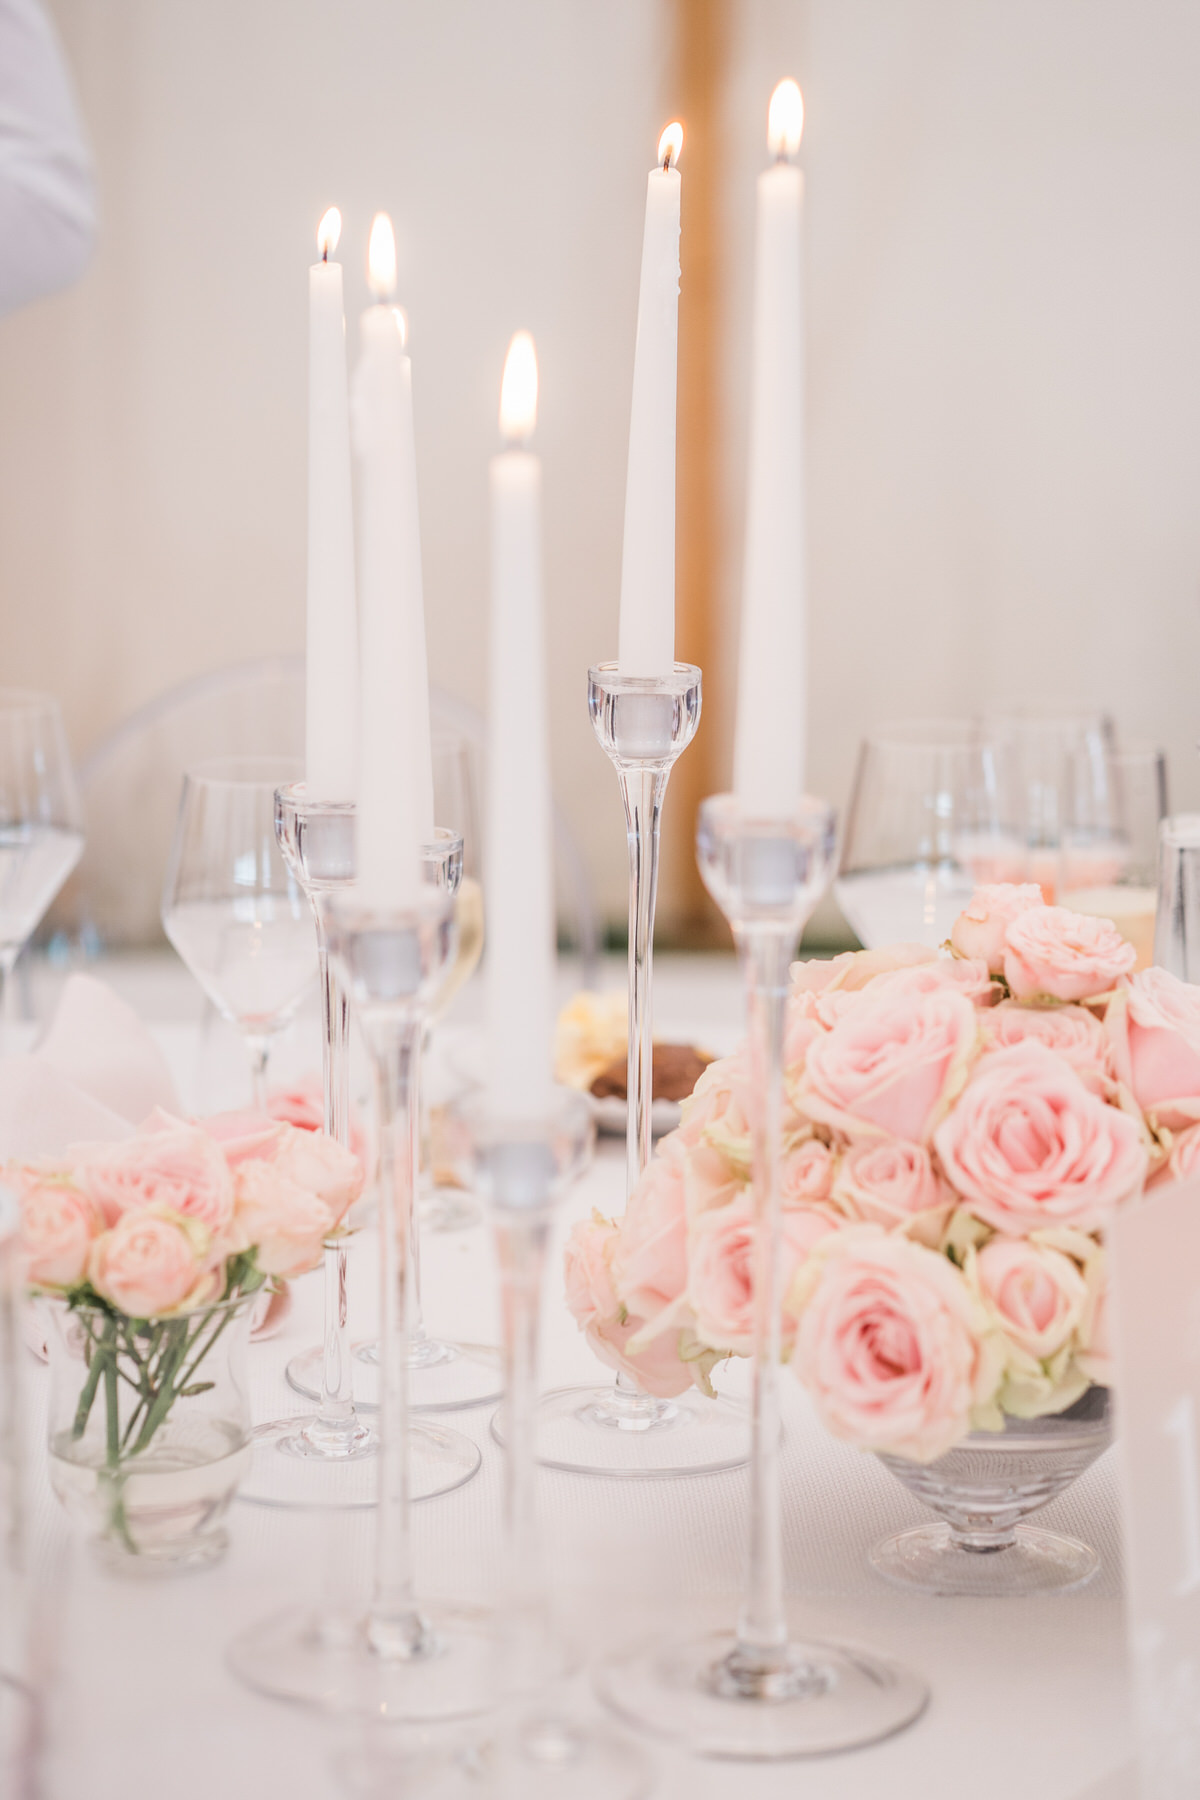 Elegant English wedding, ghost chair wedding decor, luxury marquee wedding inspiration, modern luxury wedding stationery, modern wedding decor, contemporary table styling